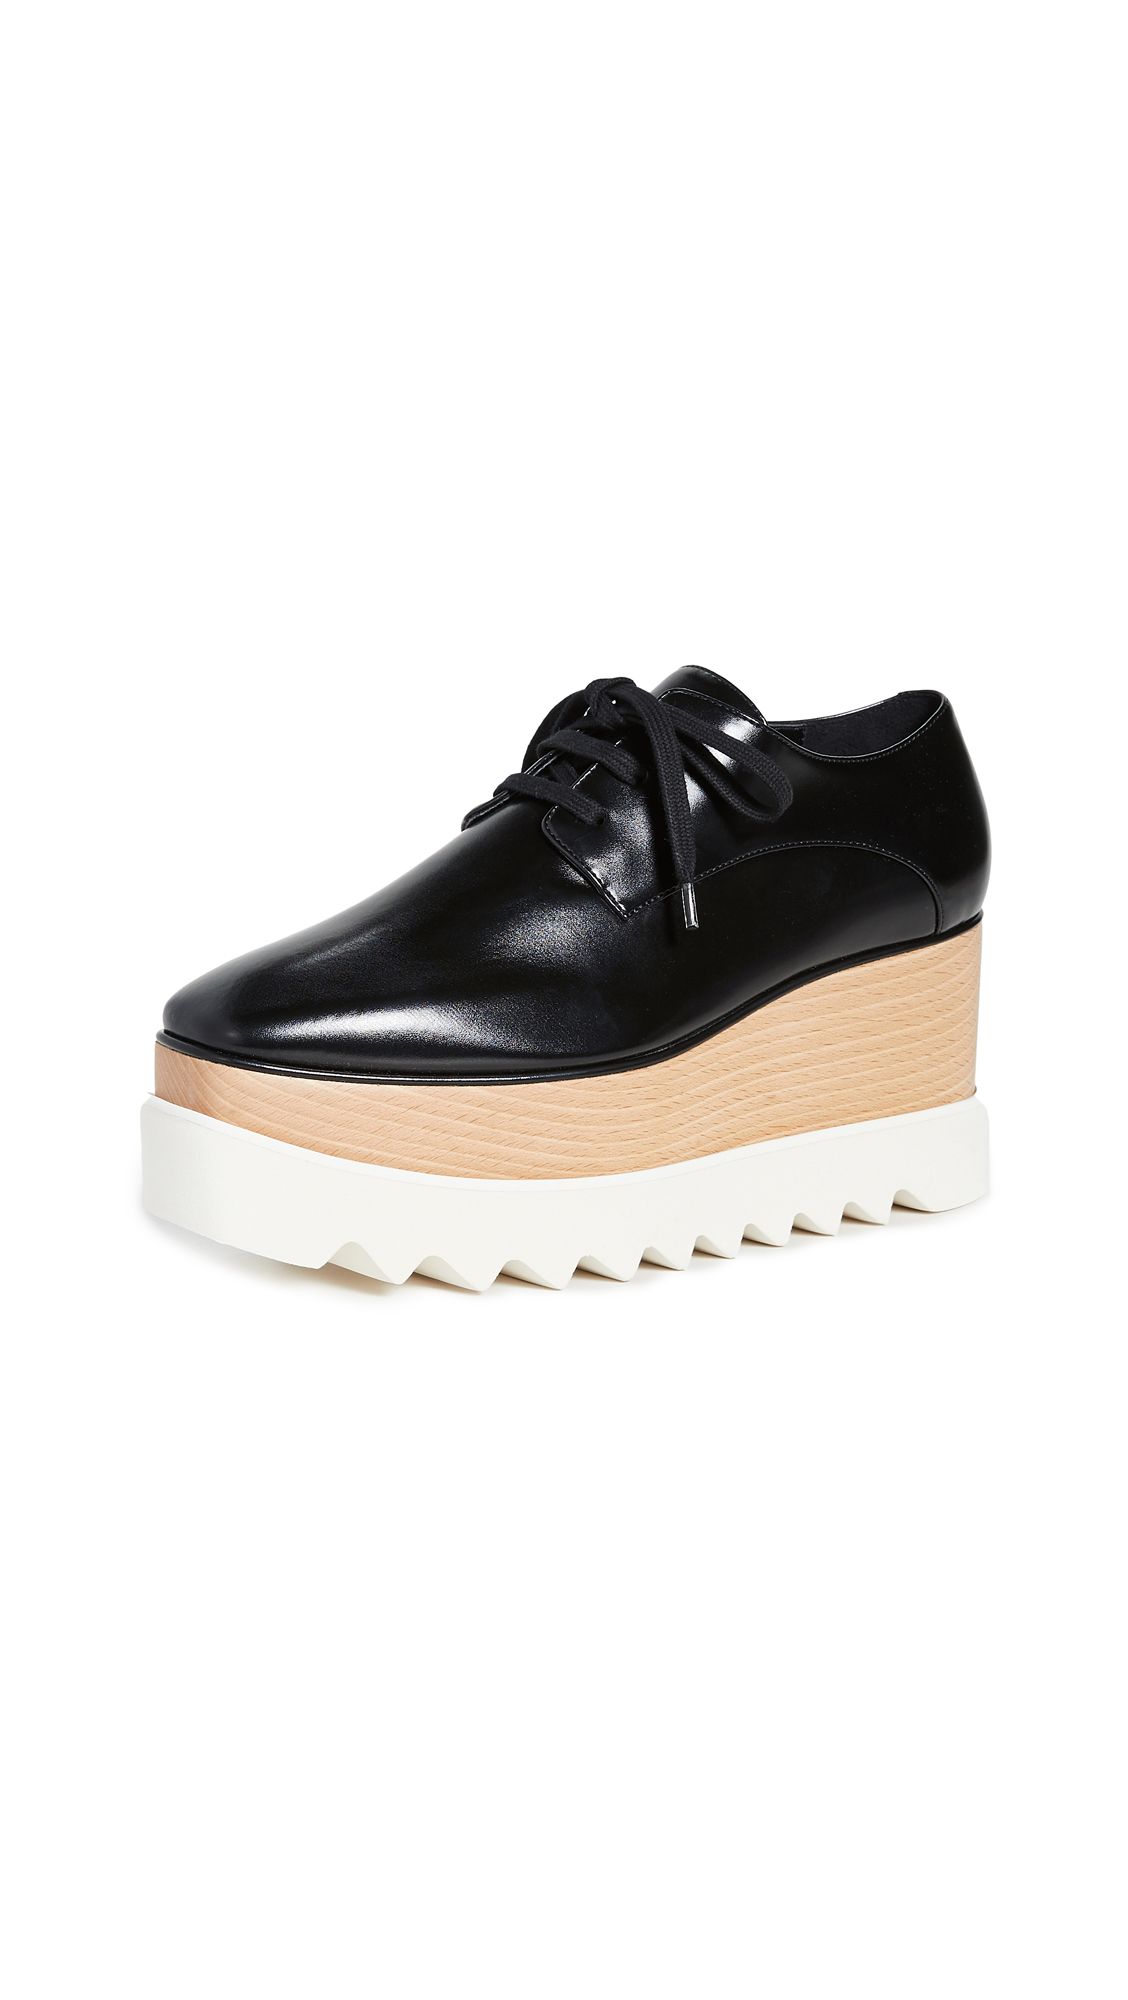 Stella McCartney Elyse Lace Up Shoes | Shopbop